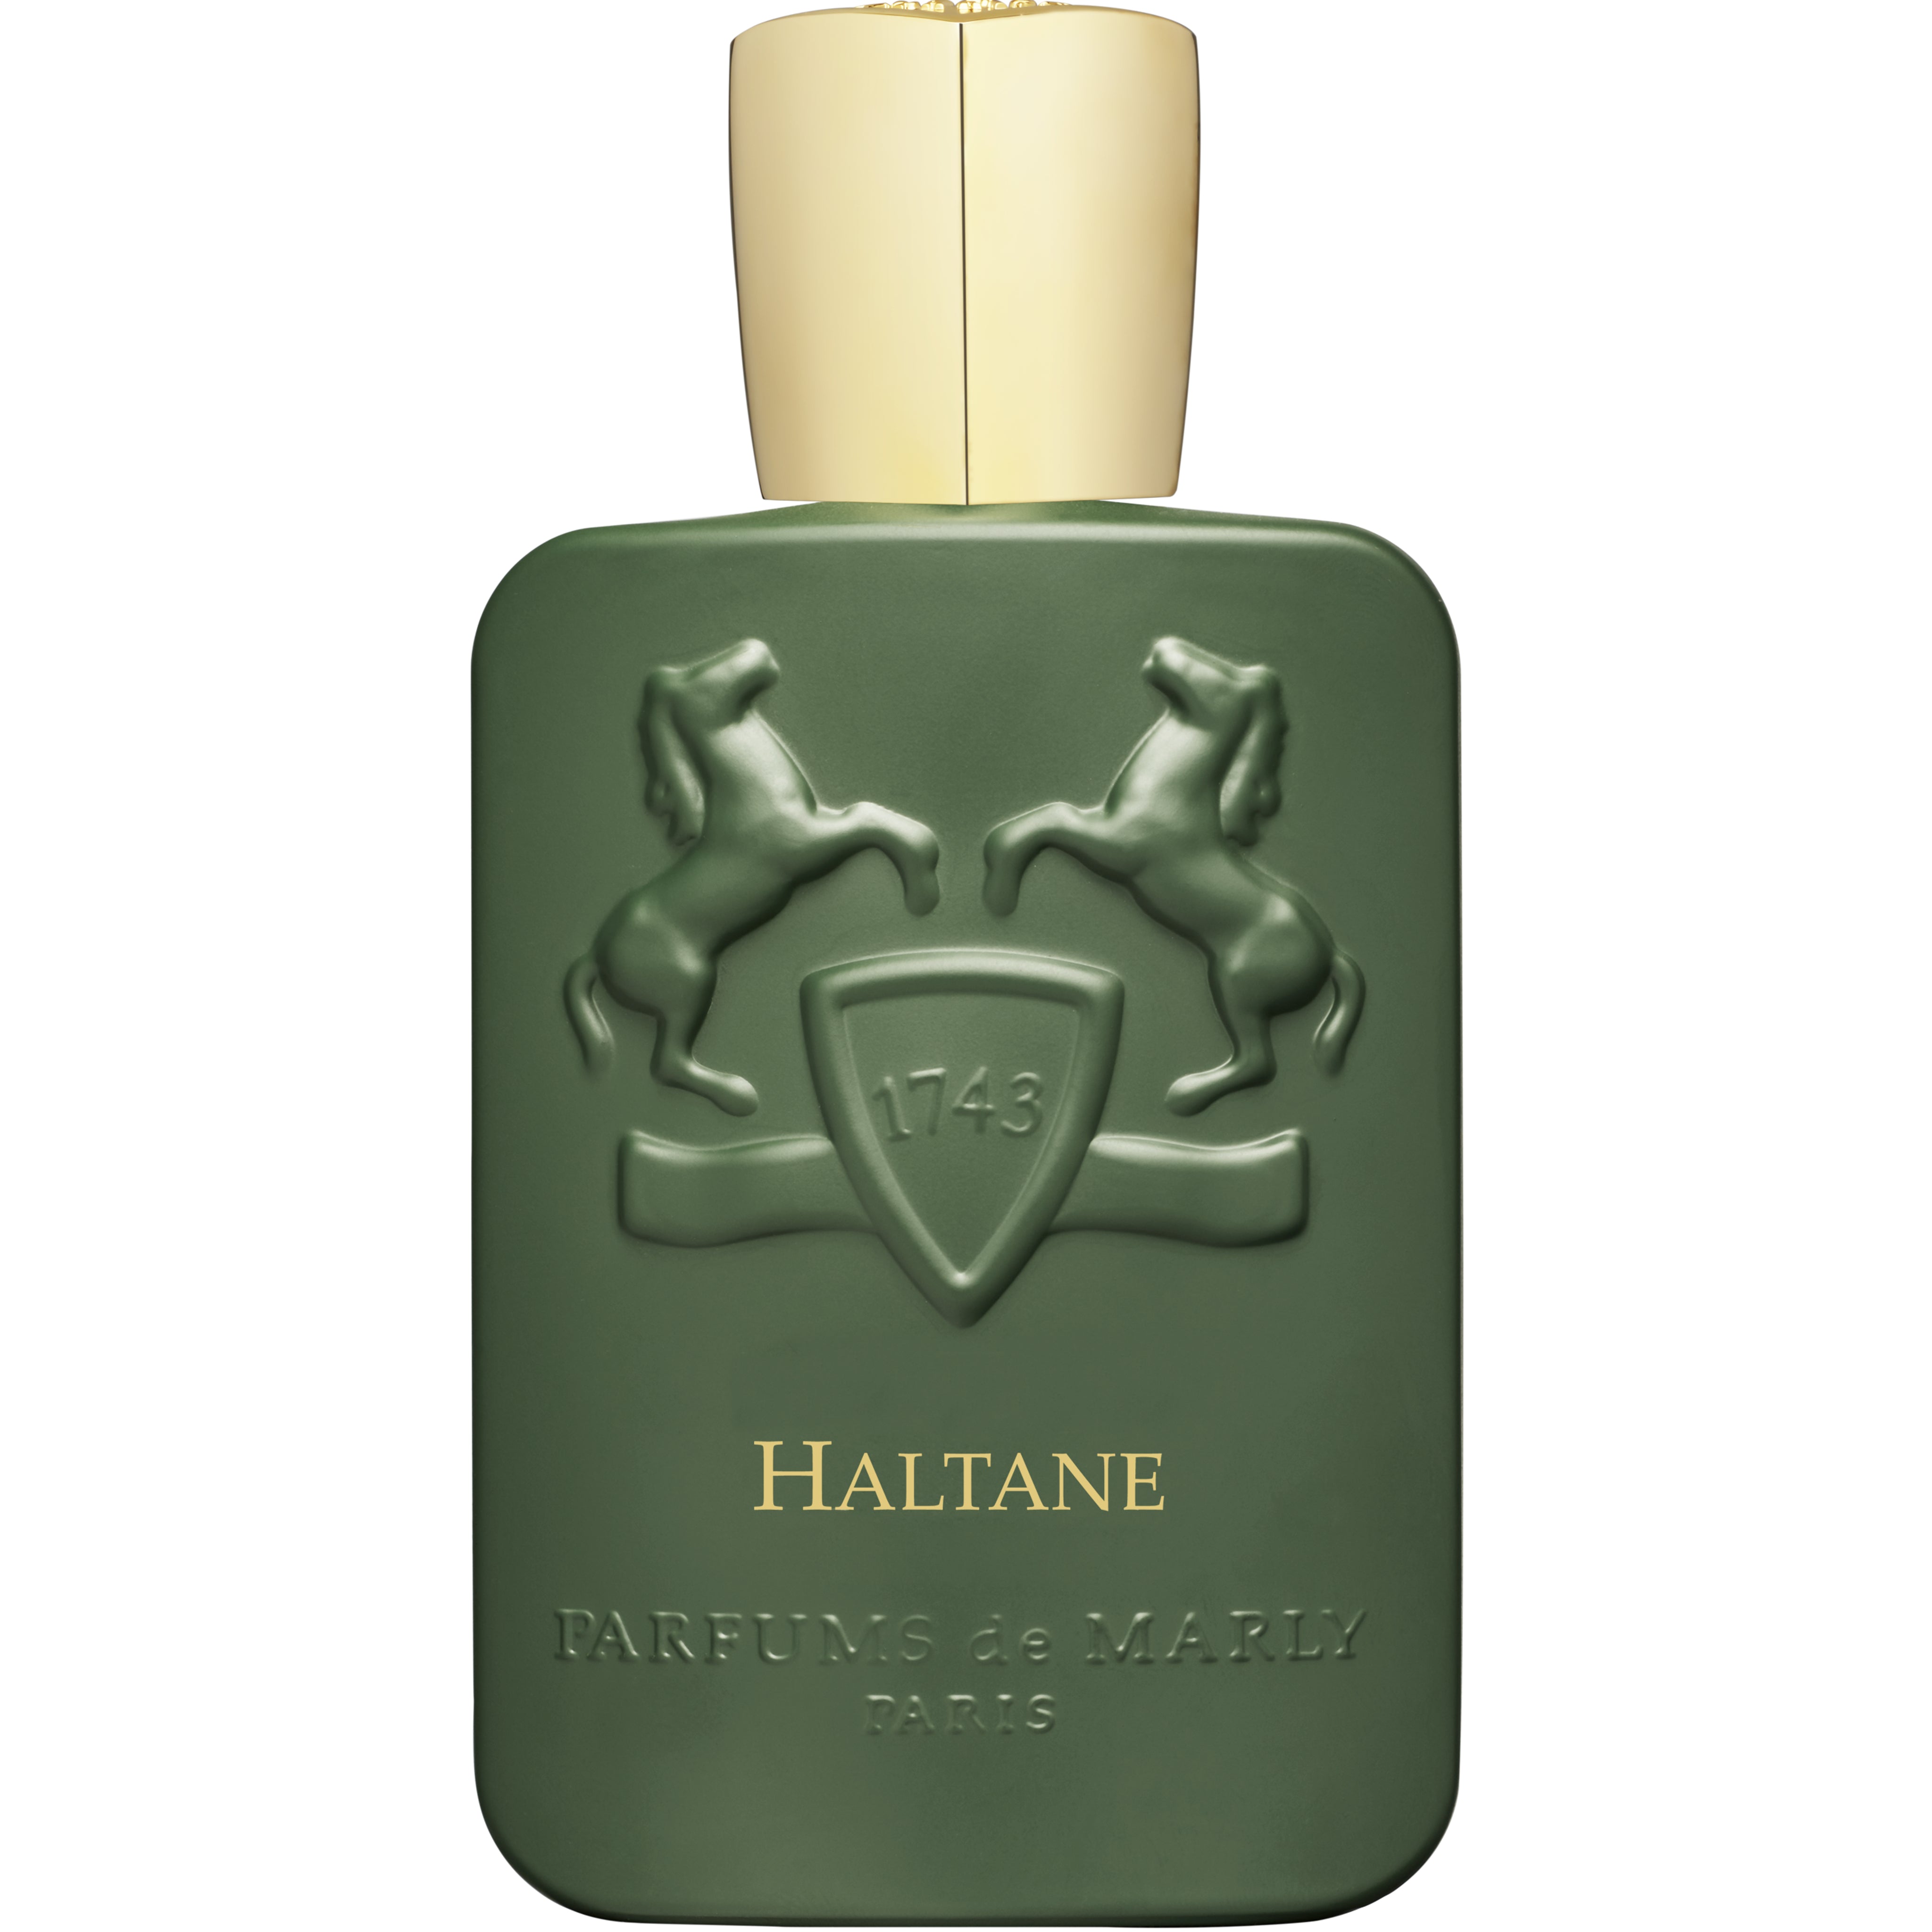 Sample of Haltane